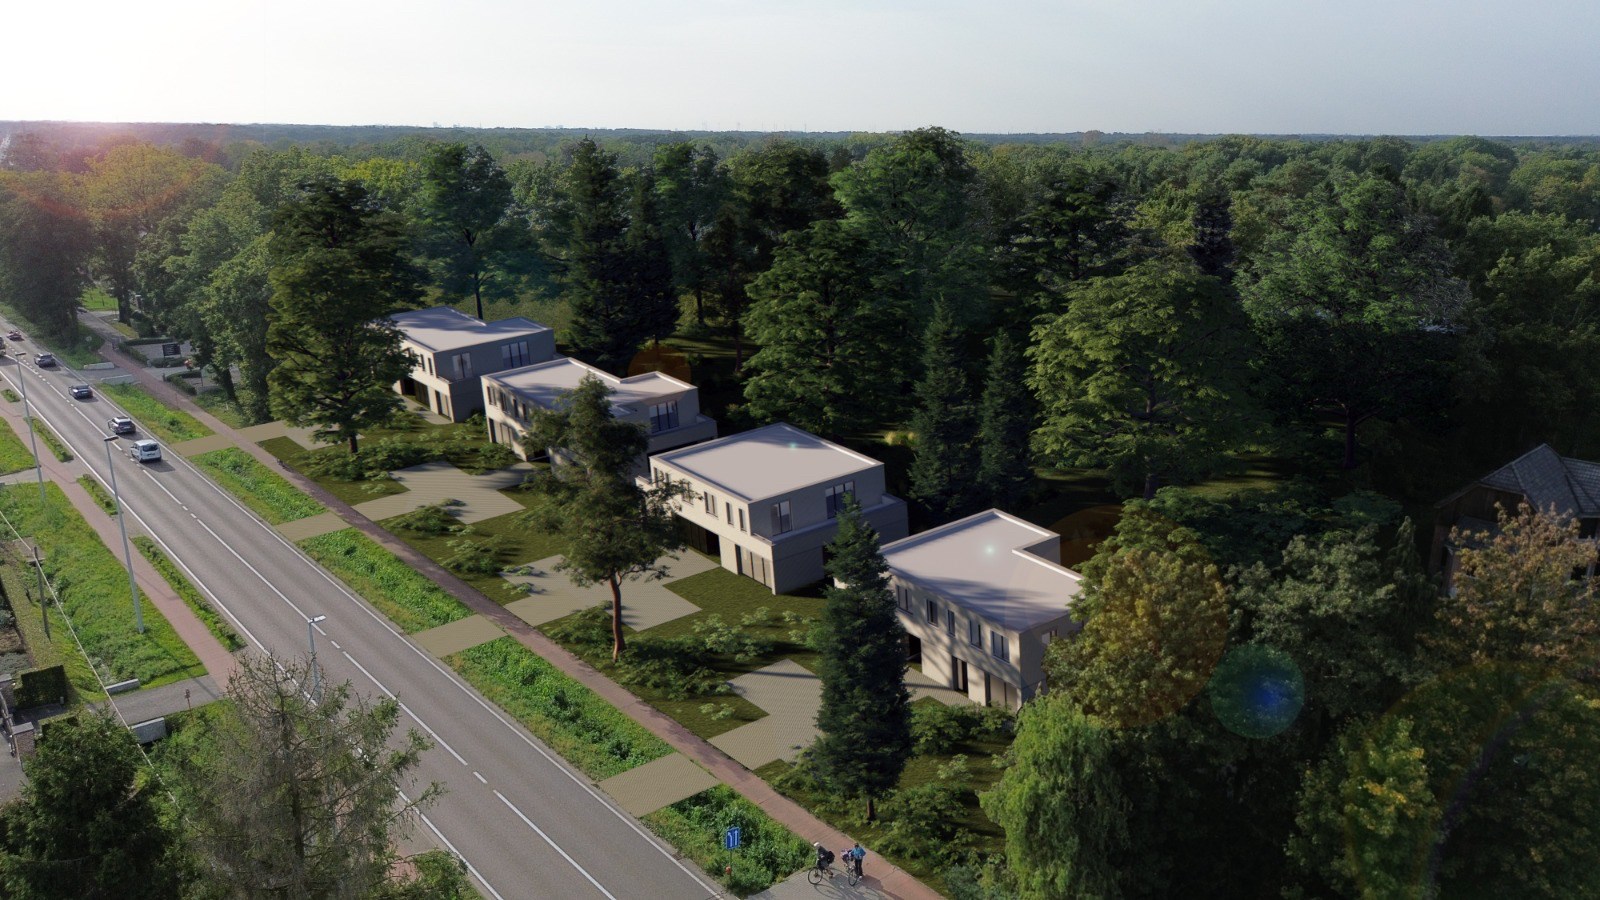 Knappe bouwgronden voor een drie-gevel villa met achterliggend bos 